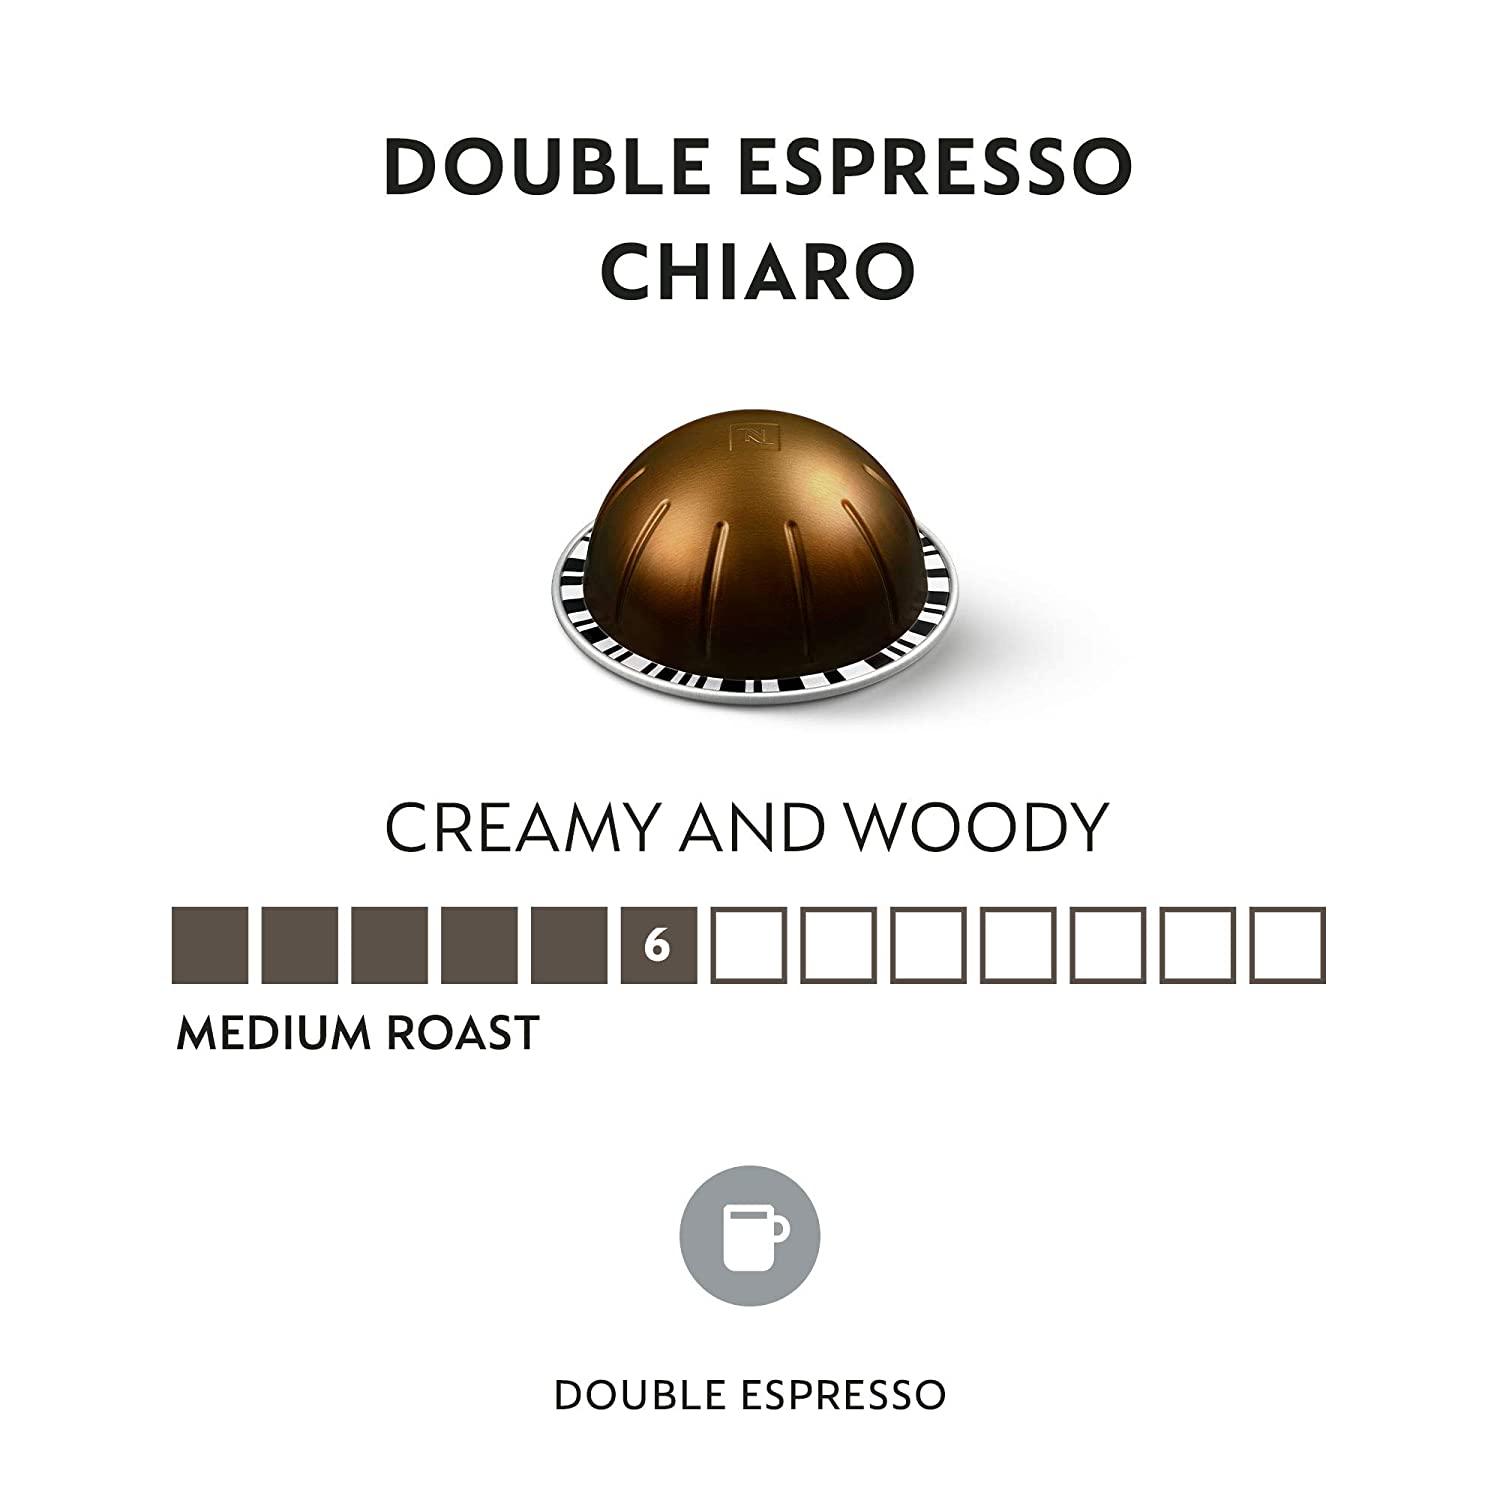 Nespresso Vertuoline Double Espresso Chiaro Capsule Pods- 10 Pods in Sleeve